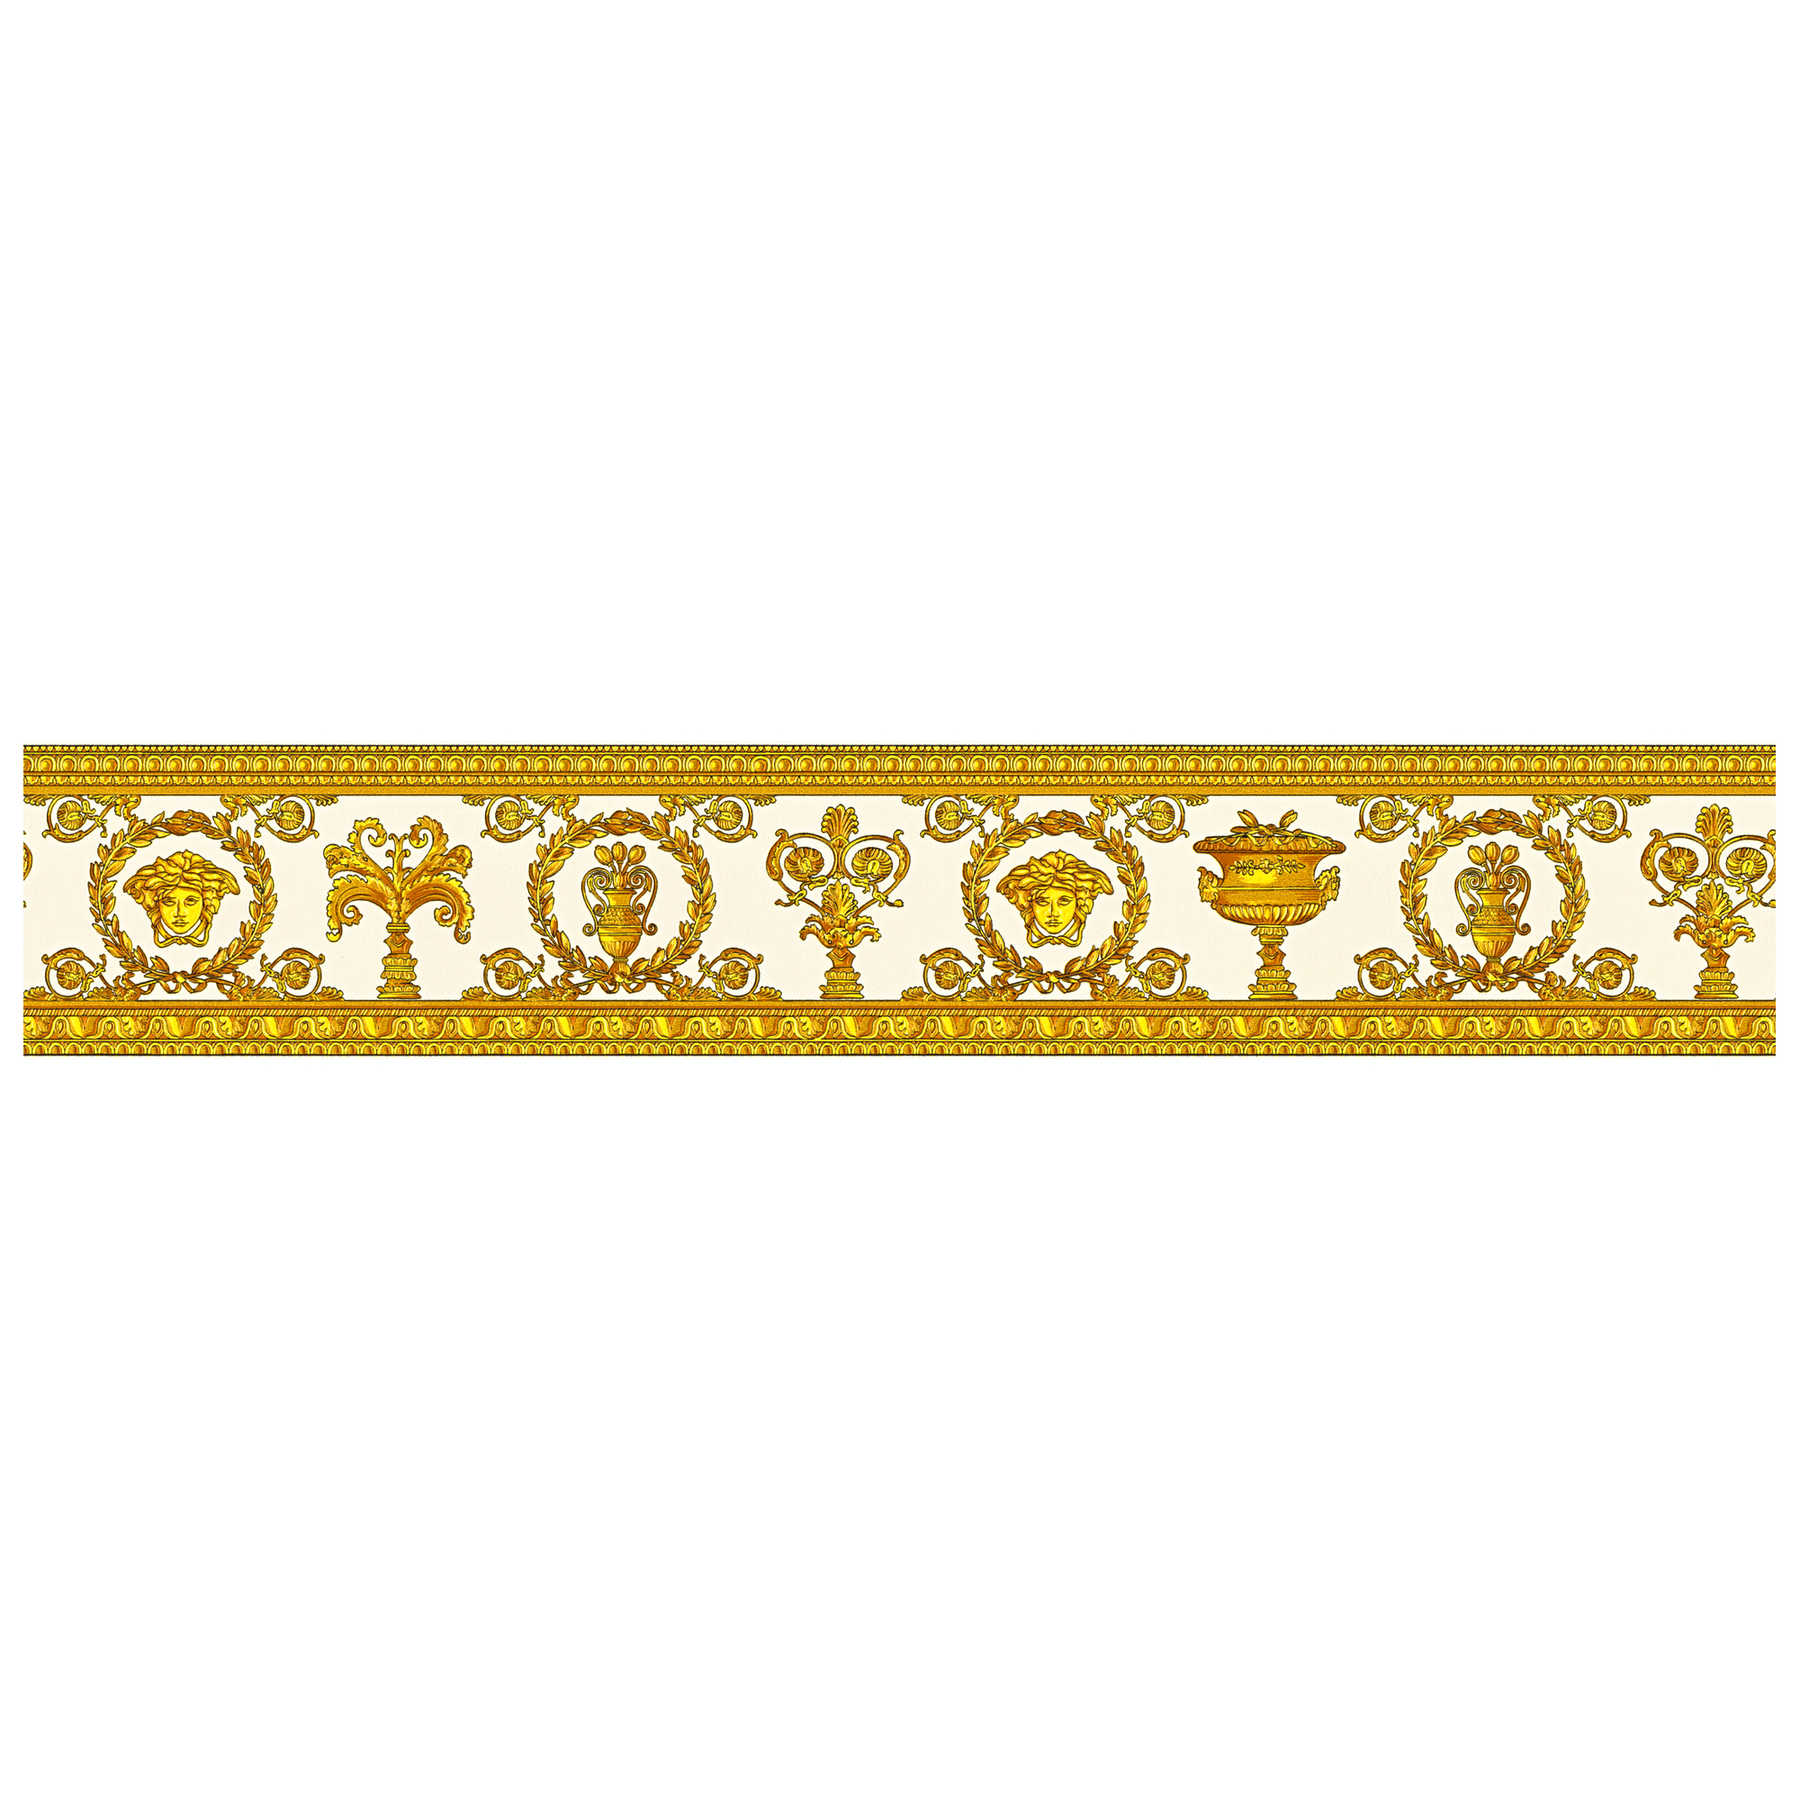 VERSACE Behangrand Golden trim - Metallic
